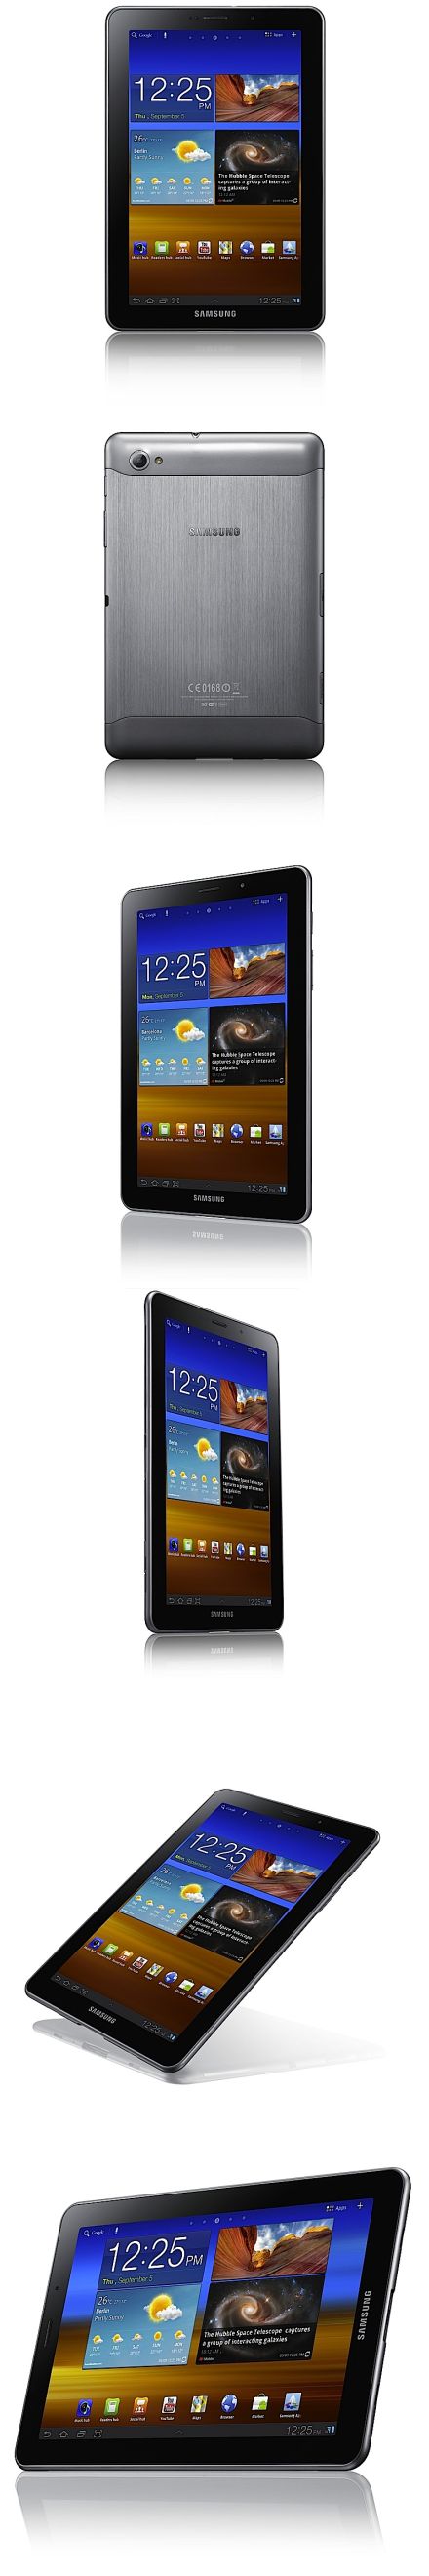 Samsung Galaxy Tab 7.7: új nettábla